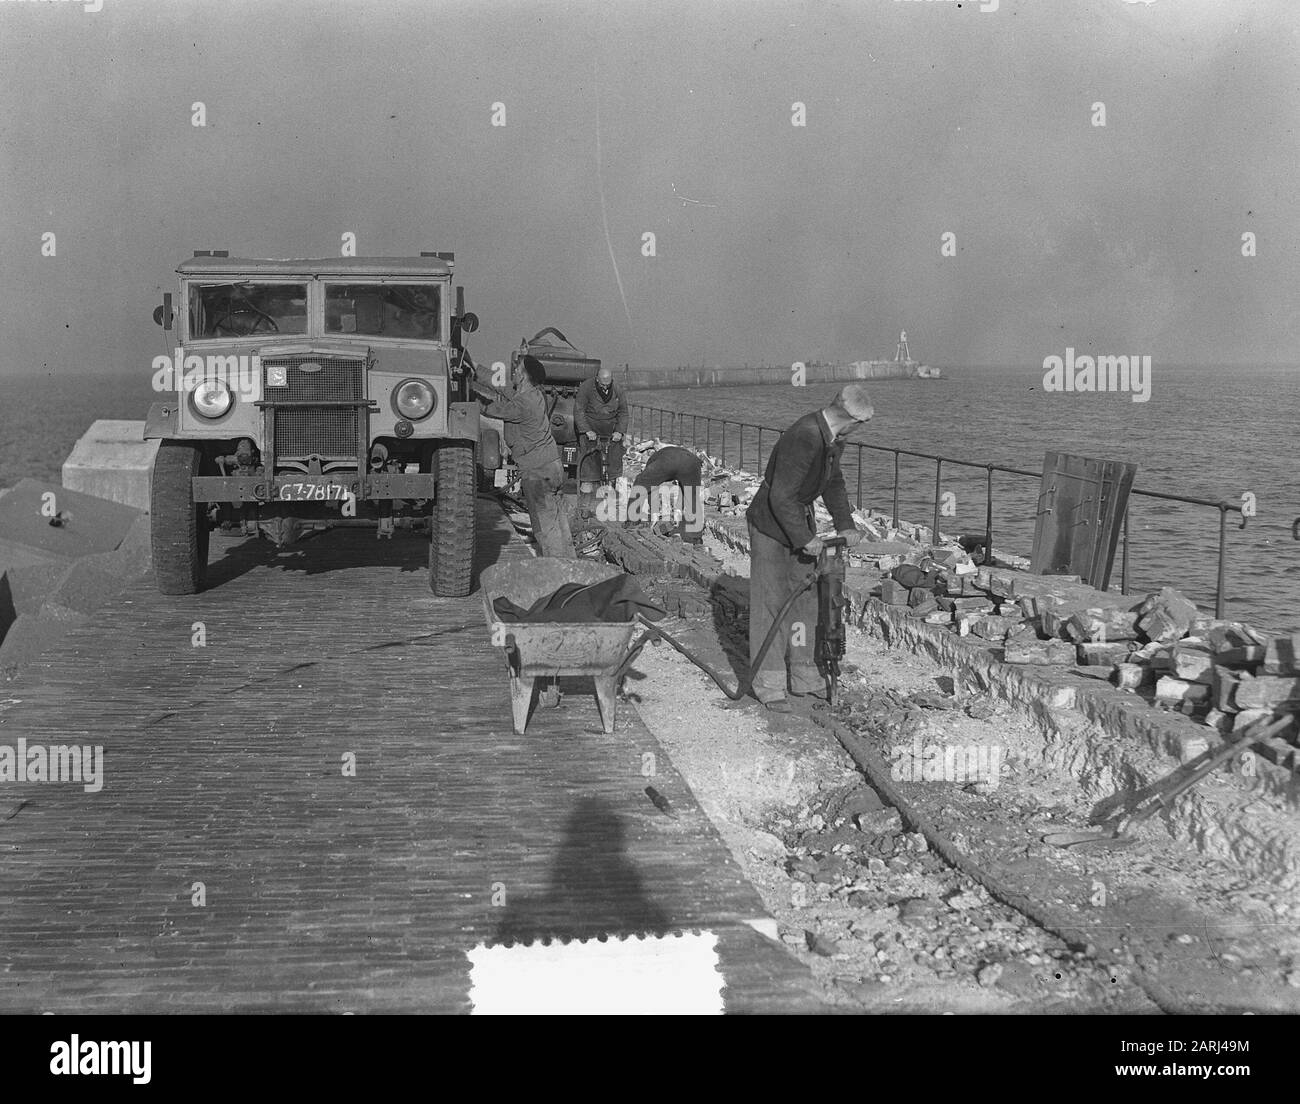 Arbeiten am Pier bei IJmuiden Datum: 10. Oktober 1951 Standort: IJmuiden Schlüsselwörter: Bauaktivitäten, Hydraulikanlagen Stockfoto